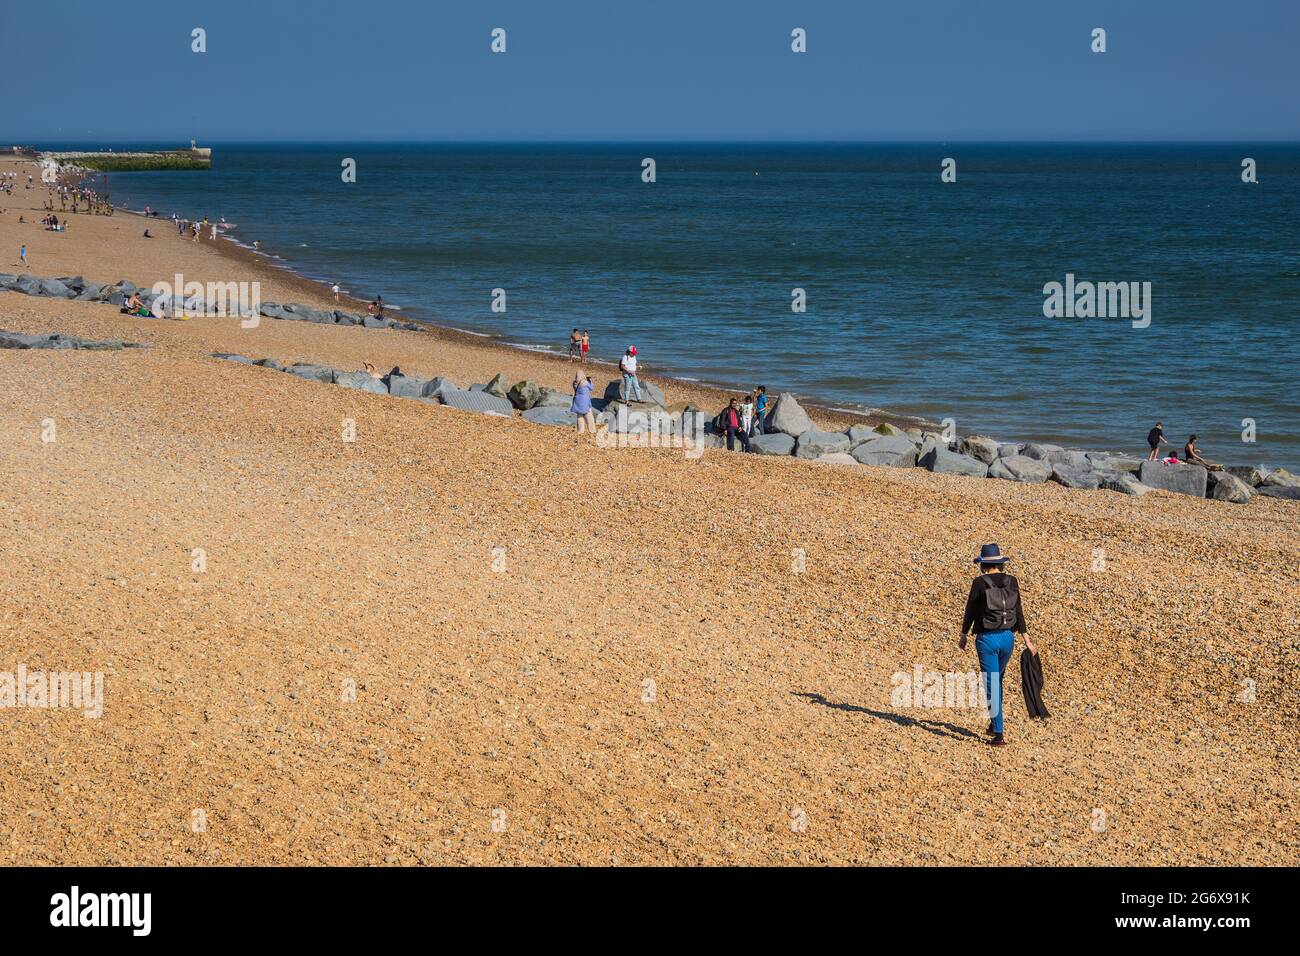 Una mujer caminando a lo largo de la playa con otras personas en el fondo. Tomado en la playa en Hastings, Reino Unido, sureste de Inglaterra. Foto de stock